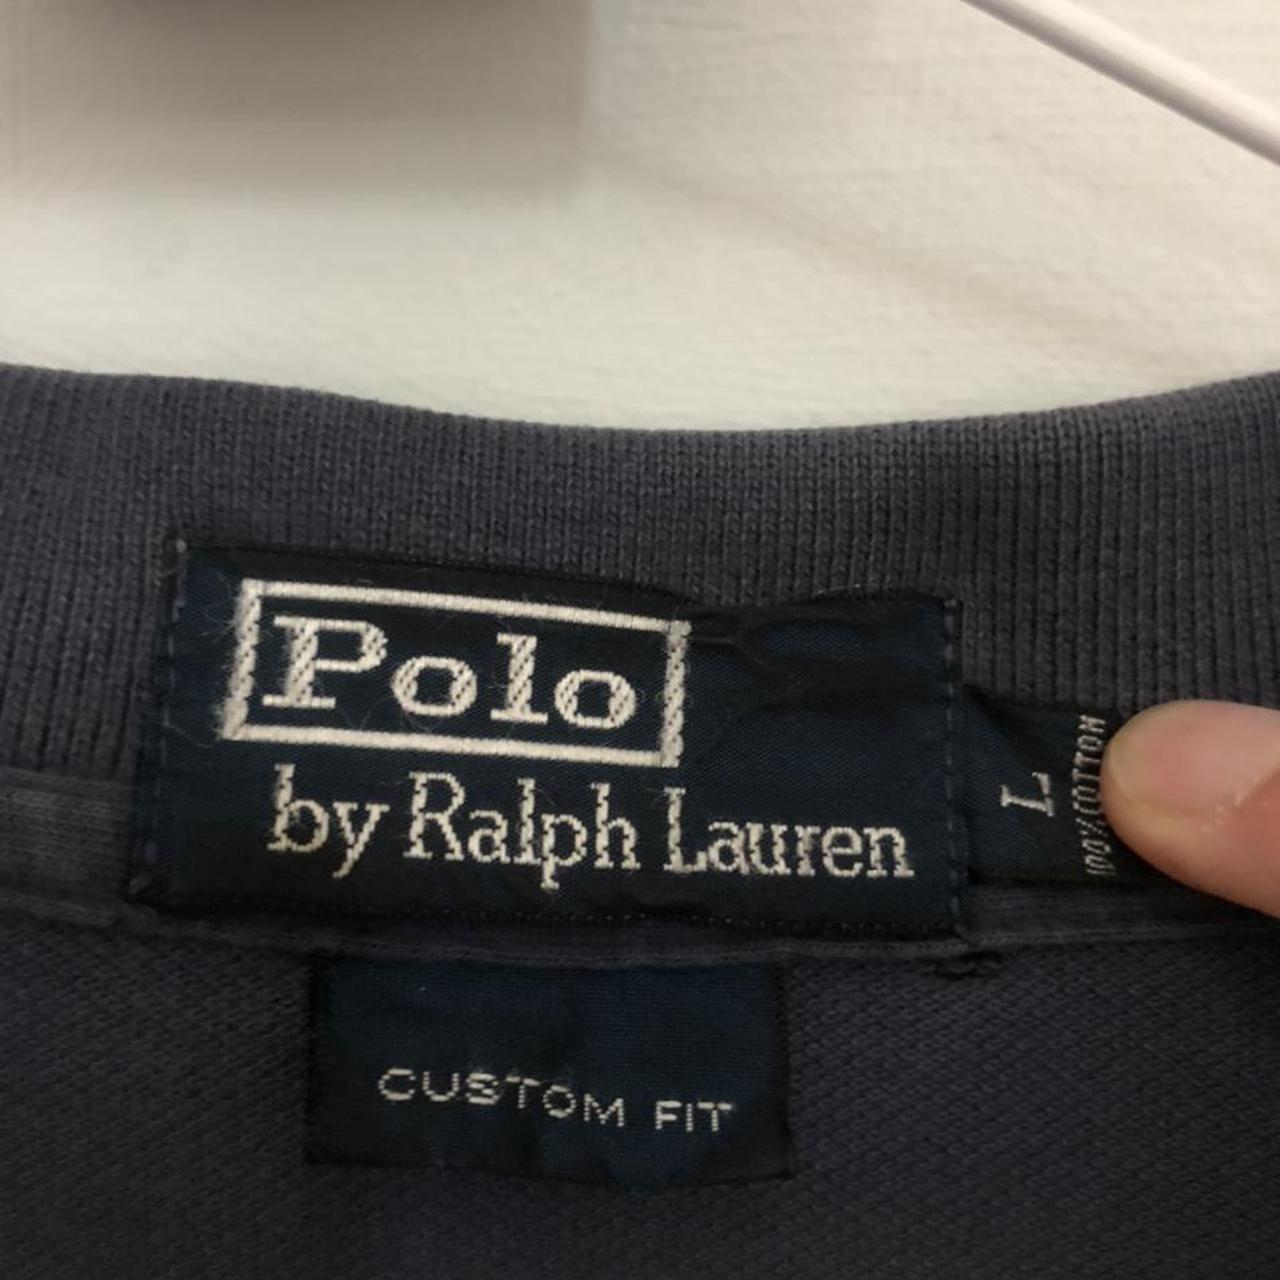 classic Ralph Lauren polo shirt • good condition: ... - Depop